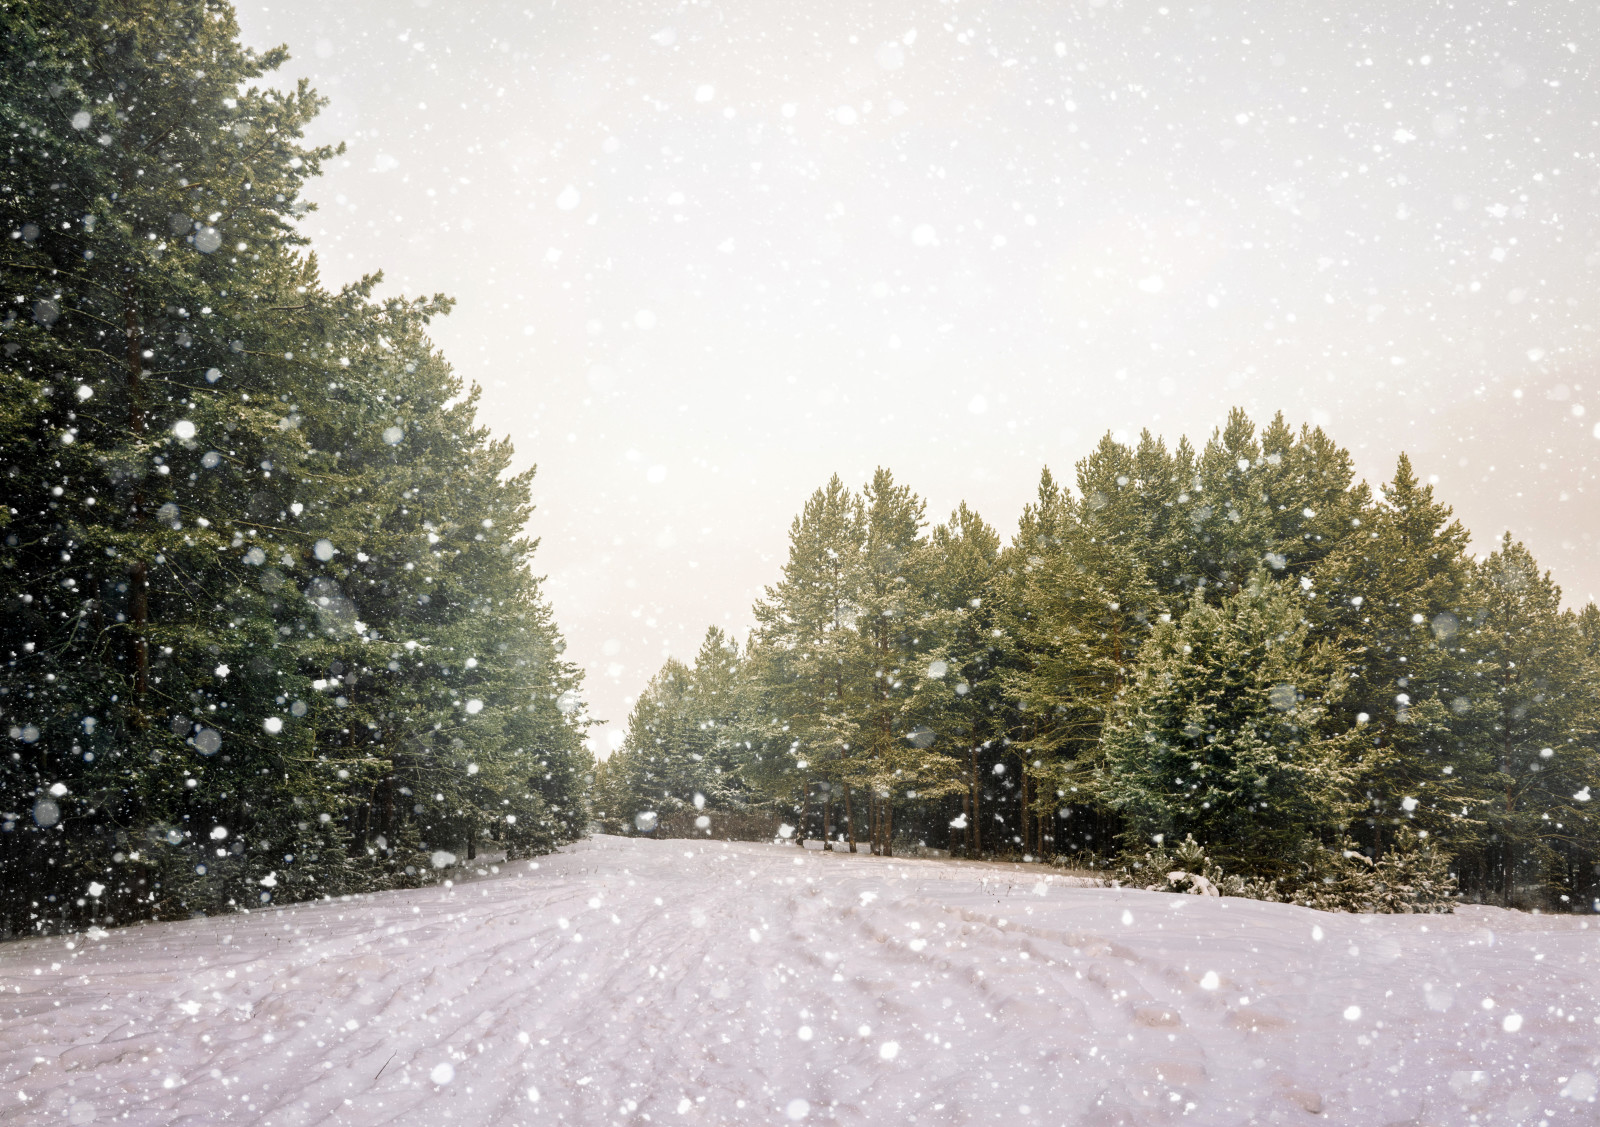 หิมะ, เกล็ดหิมะ, ป่า, ฤดูหนาว, ถนน, ต้นไม้